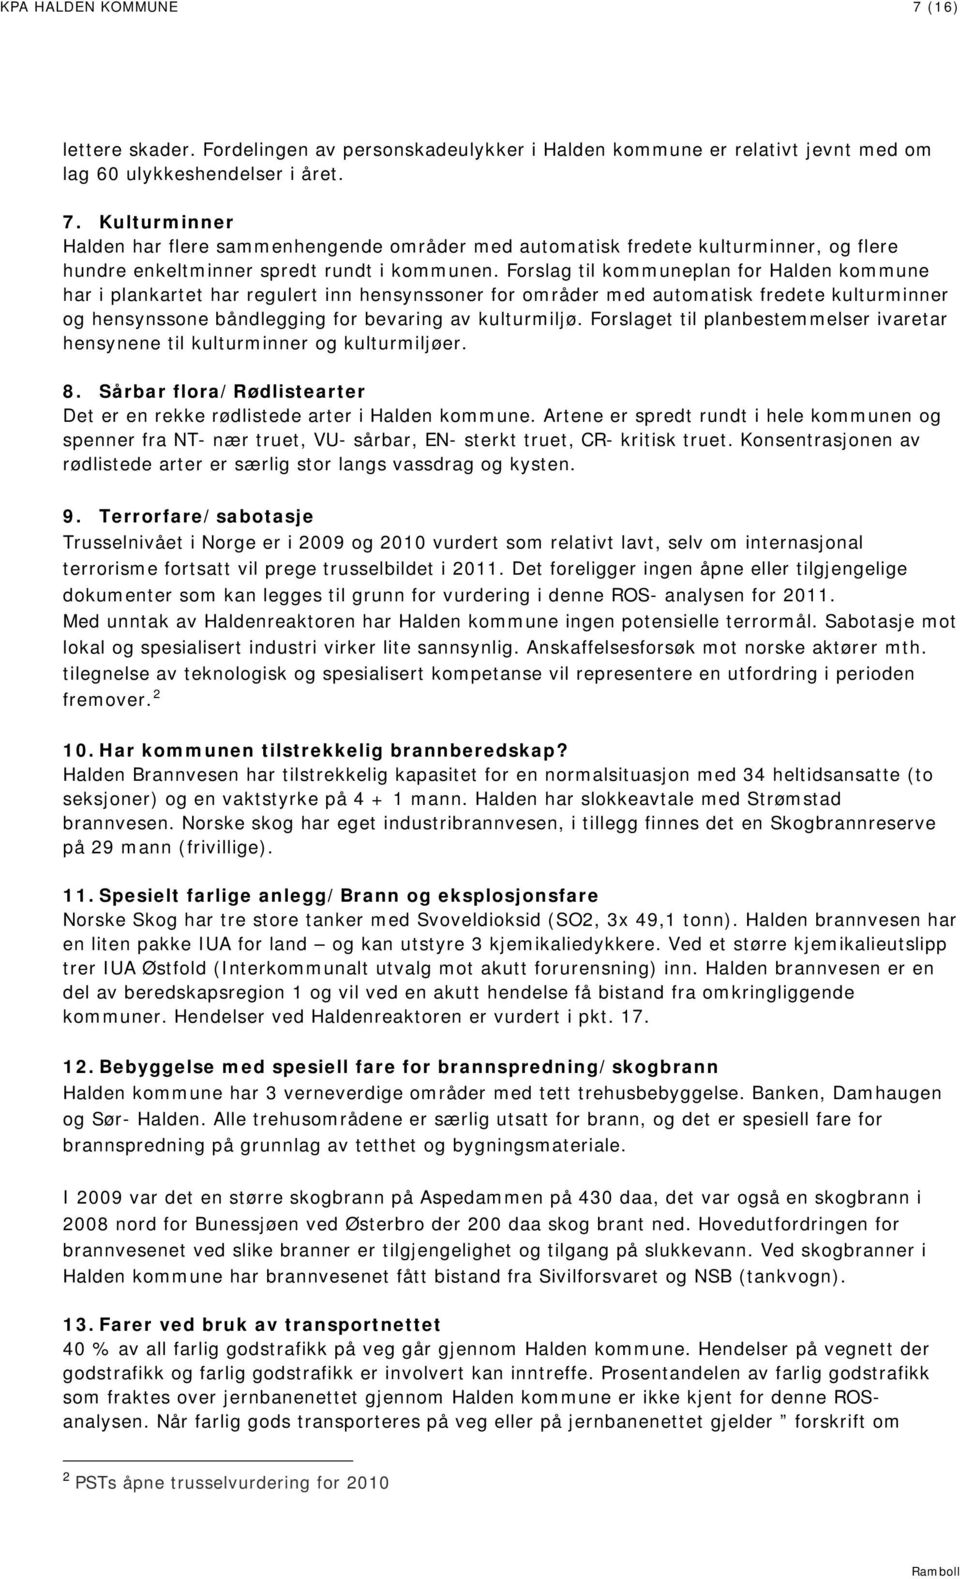 Forslaget til planbestemmelser ivaretar hensynene til kulturminner og kulturmiljøer. 8. Sårbar flora/rødlistearter Det er en rekke rødlistede arter i Halden kommune.